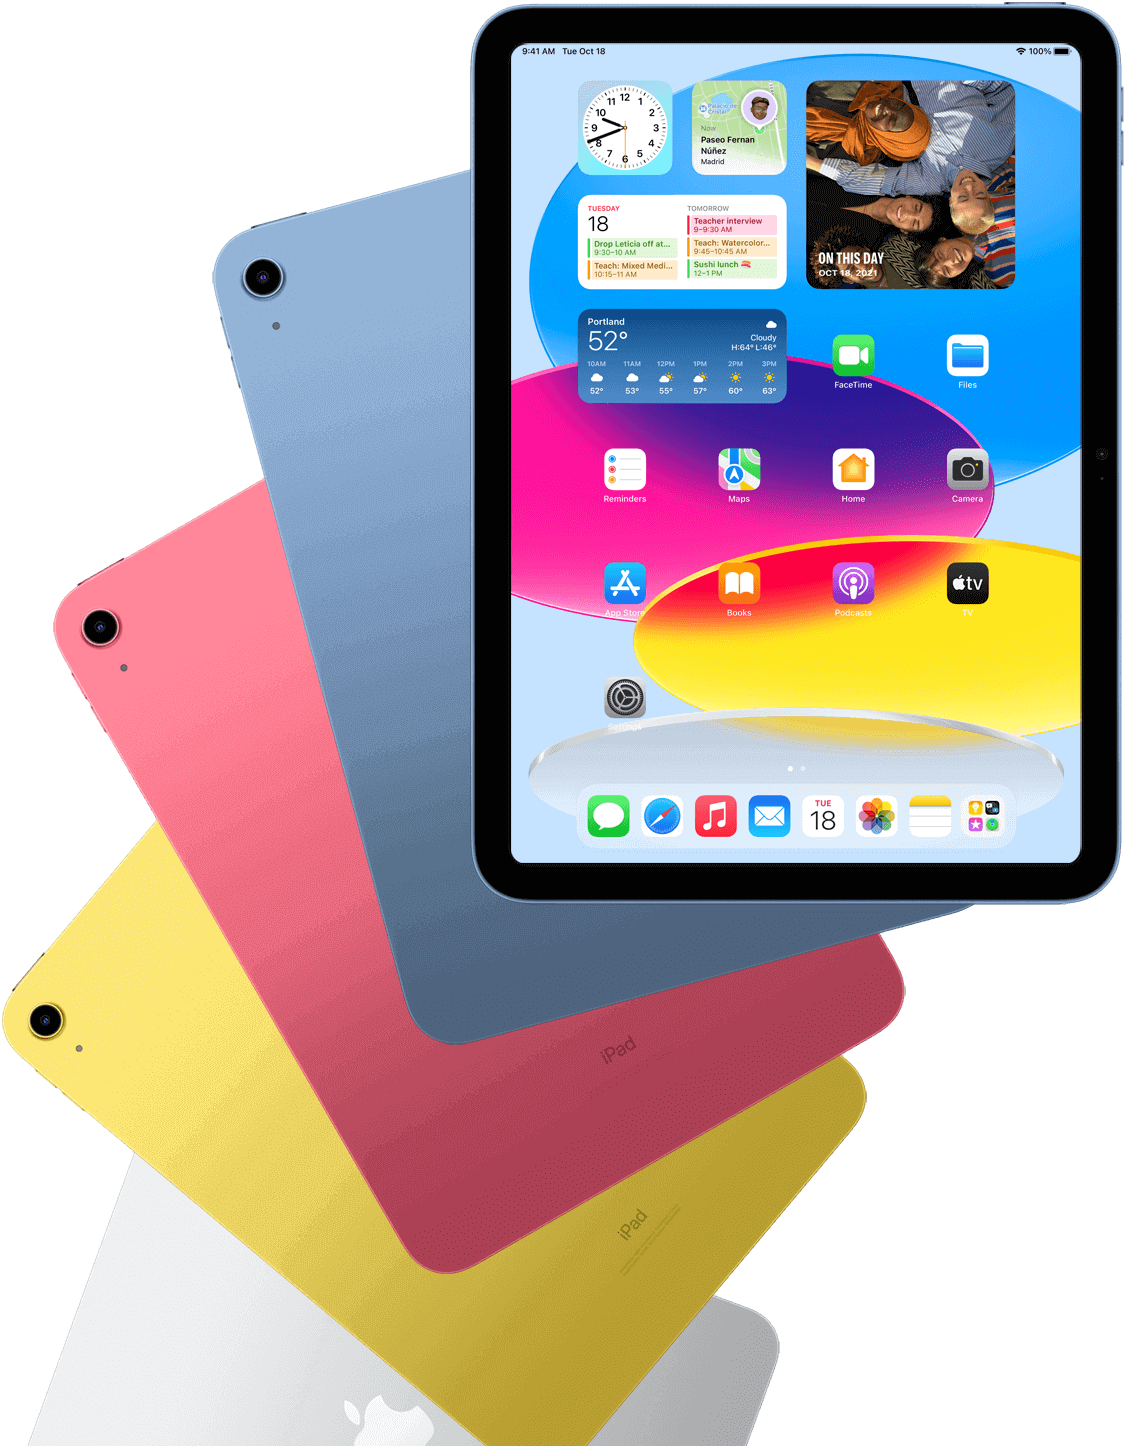 Вигляд iPad спереду, з відкритим головним екраном, і пристрої iPad синього, рожевого, жовтого та сріблястого кольорів за ним.